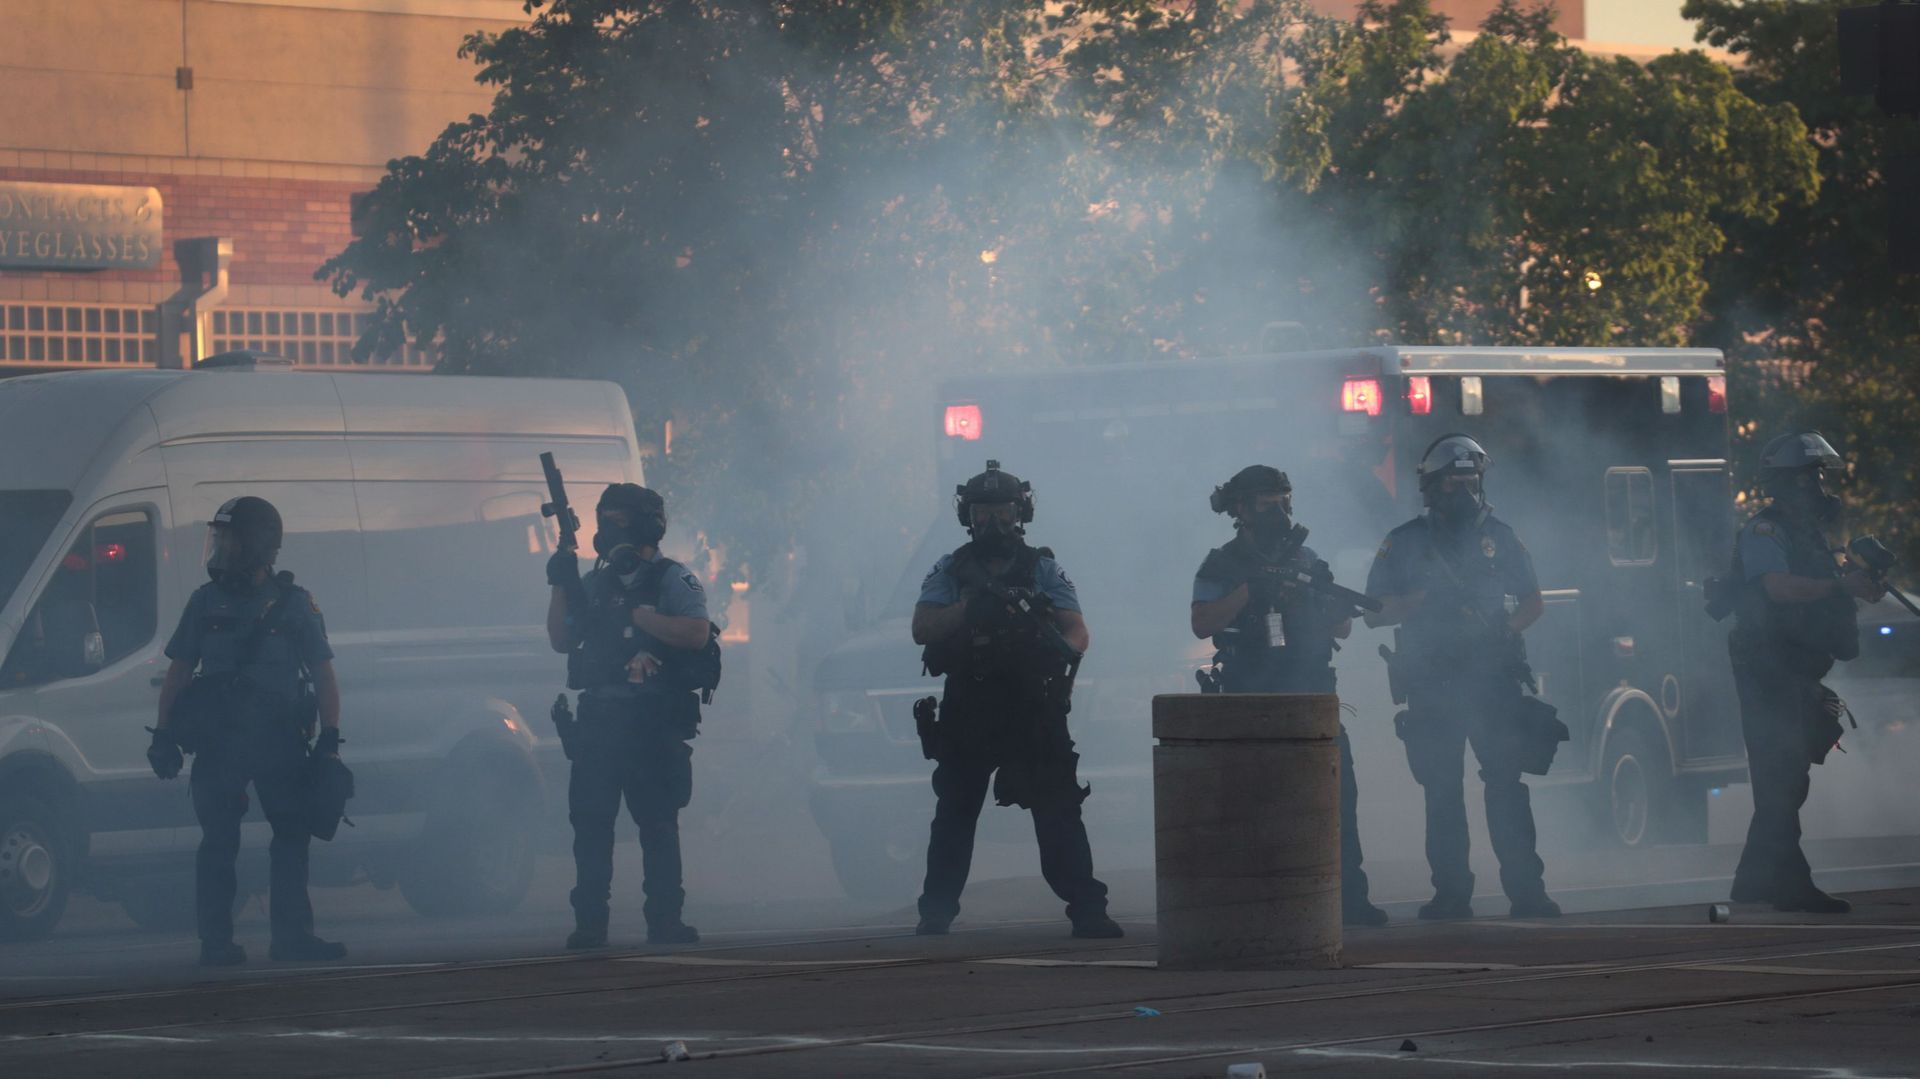 Des policiers dans un nuage de gaz lacrymogène lors d’une manifestation le 28 mai 2020 à St. Paul, Minnesota.